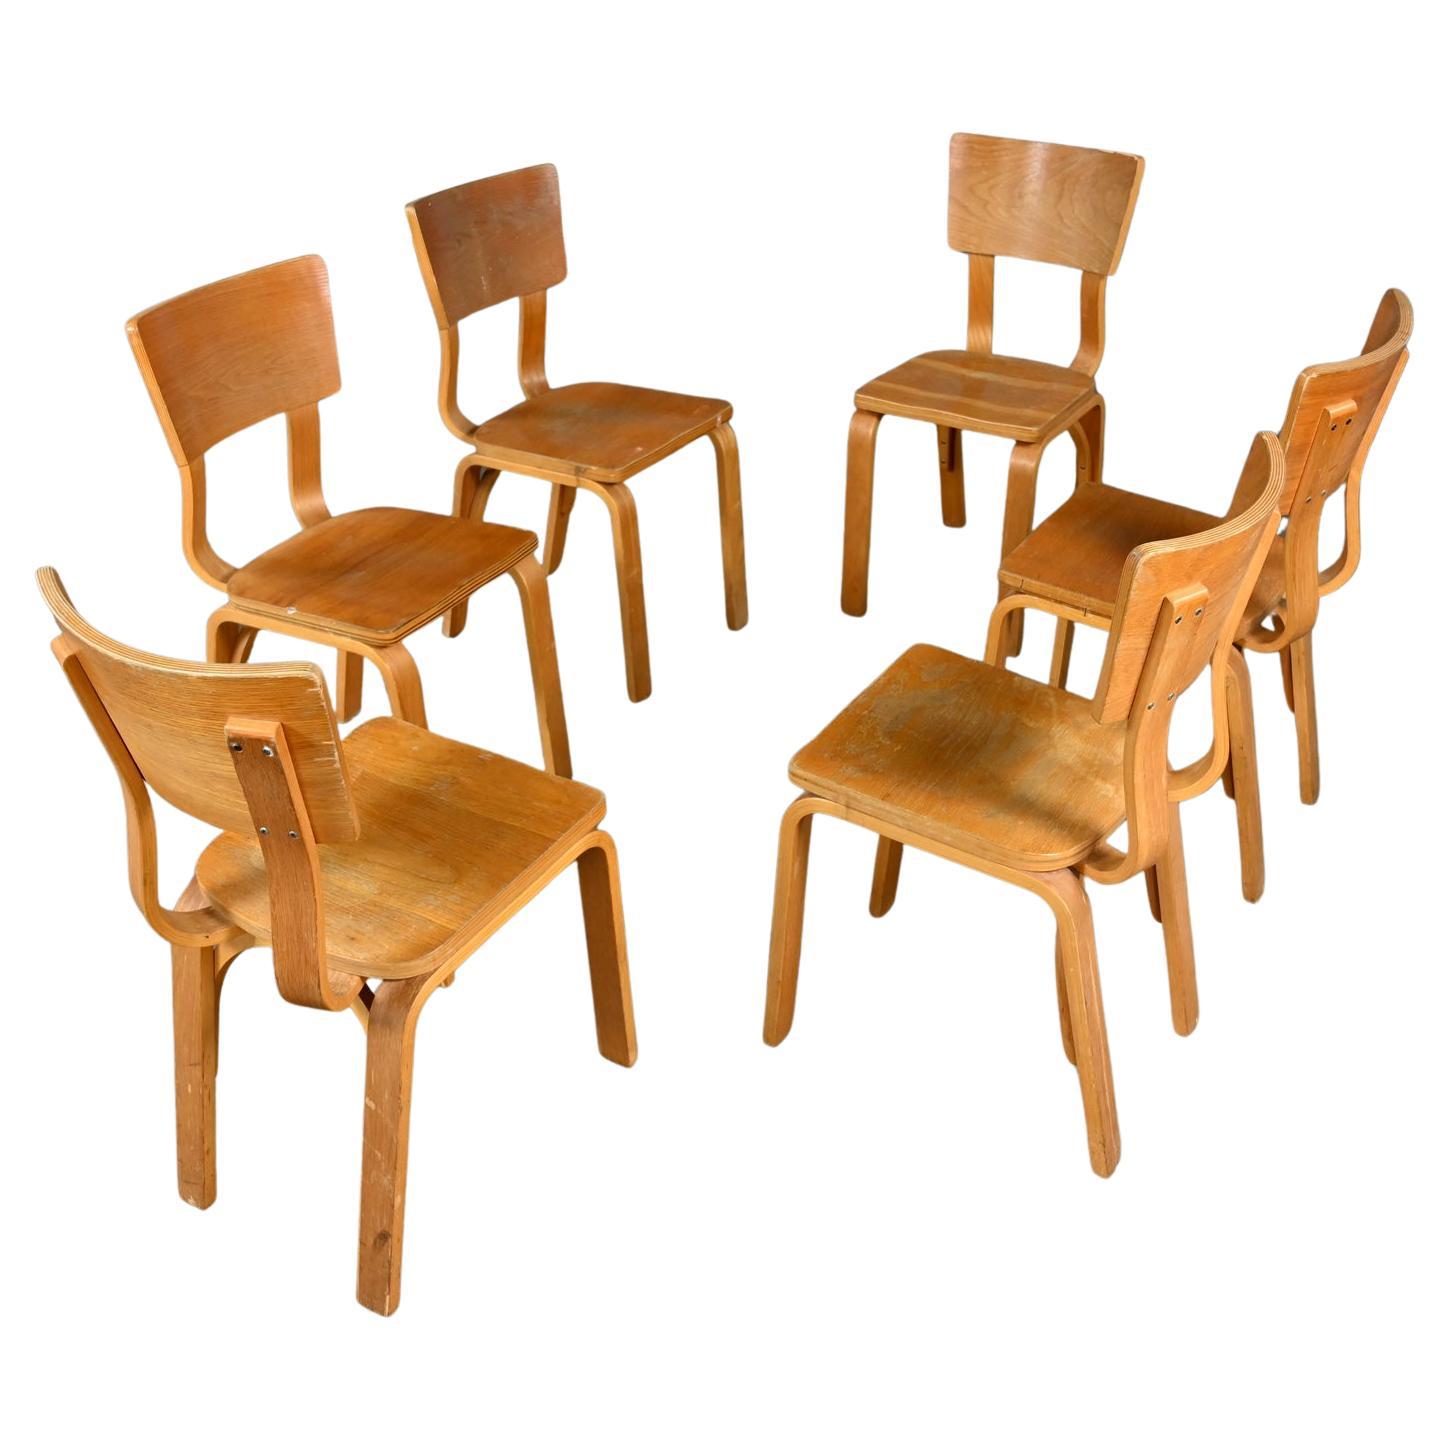 Ensemble de 6 chaises de salle à manger MCM Thonet #1216 en contreplaqué de chêne courbé, assise en selle, arc simple